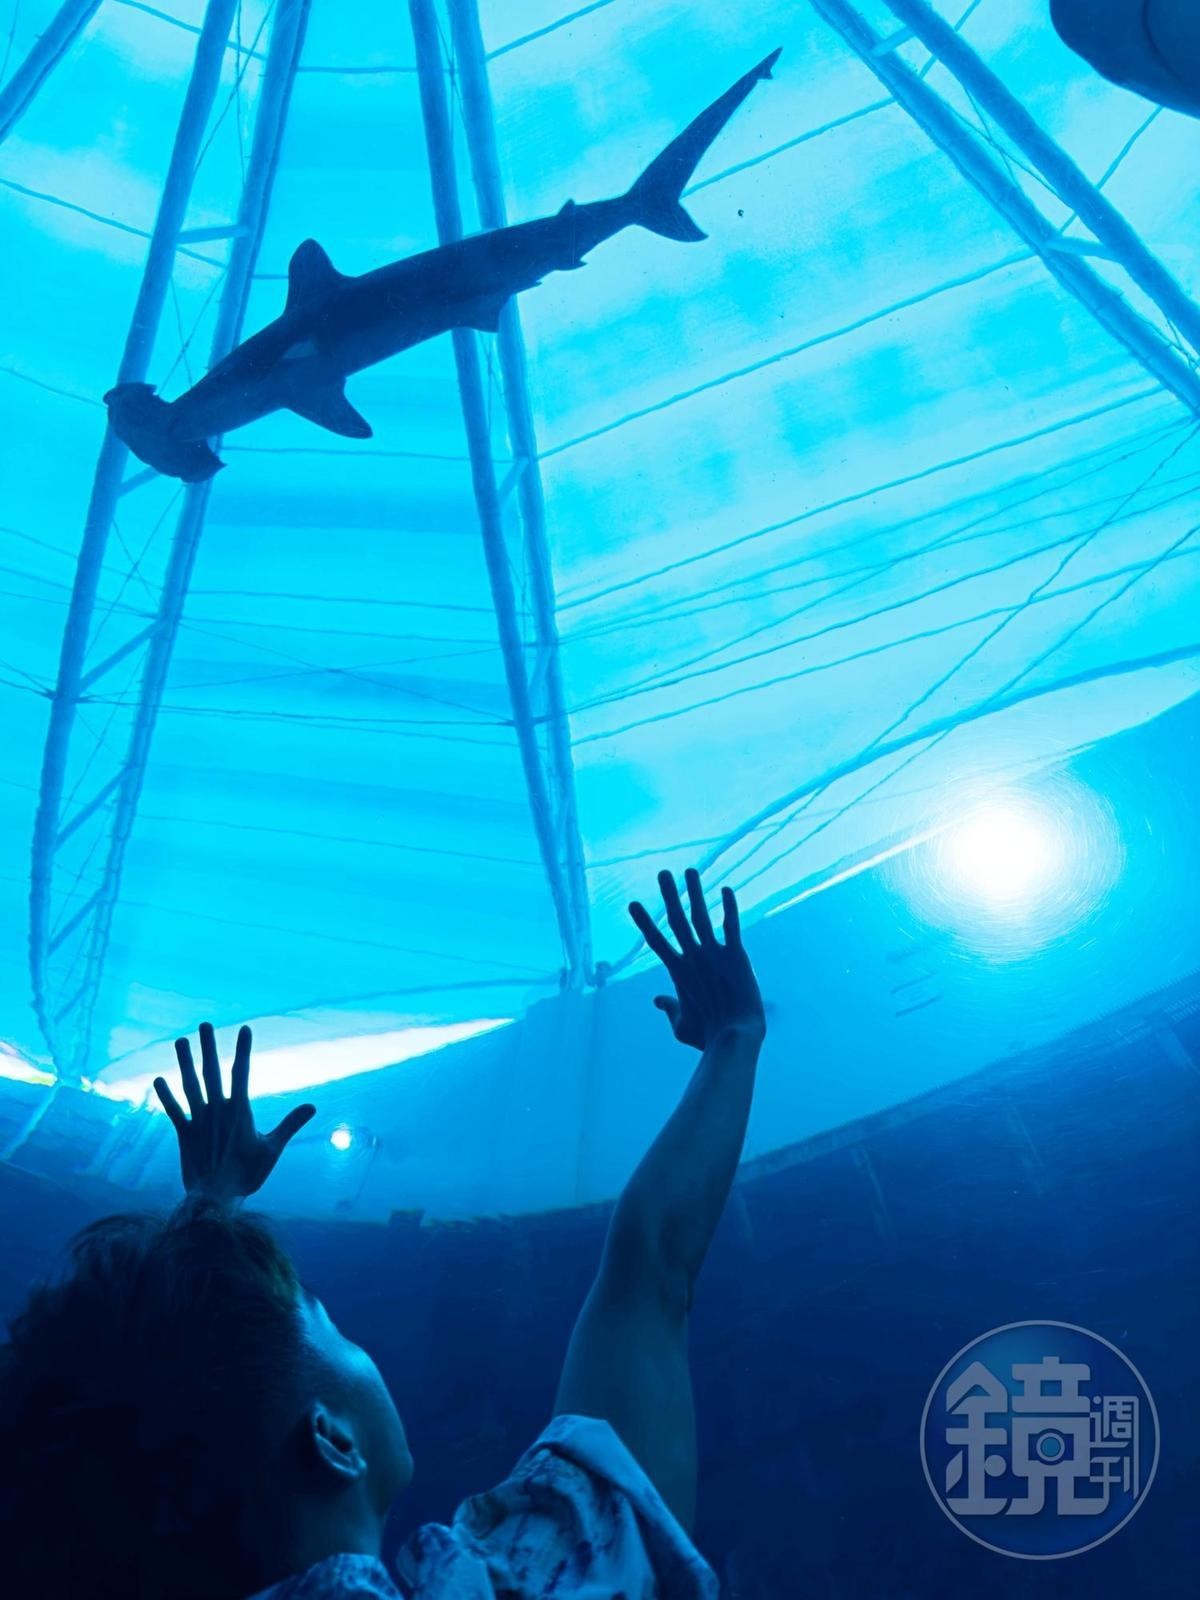 海底隧道內可以欣賞多達100隻鯊魚在頭上游過的震撼場景。